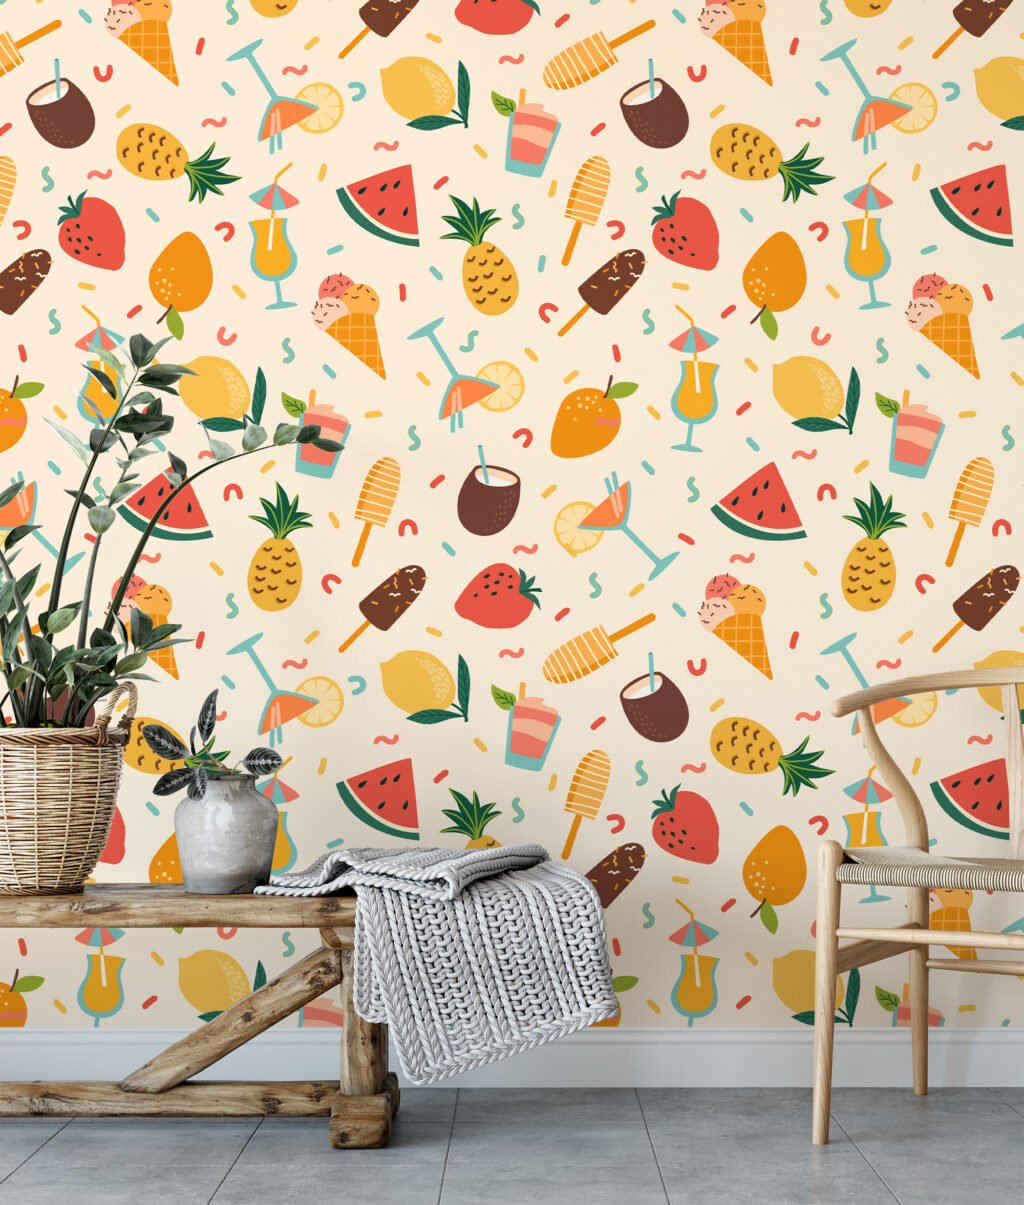 Retro Yaz Havası Parti İkonları Meyve İllüstrasyon Duvar Kağıdı, Tropikal Meyve ve Dondurma 3D Duvar Posteri Çocuk Odası Duvar Kağıtları 6